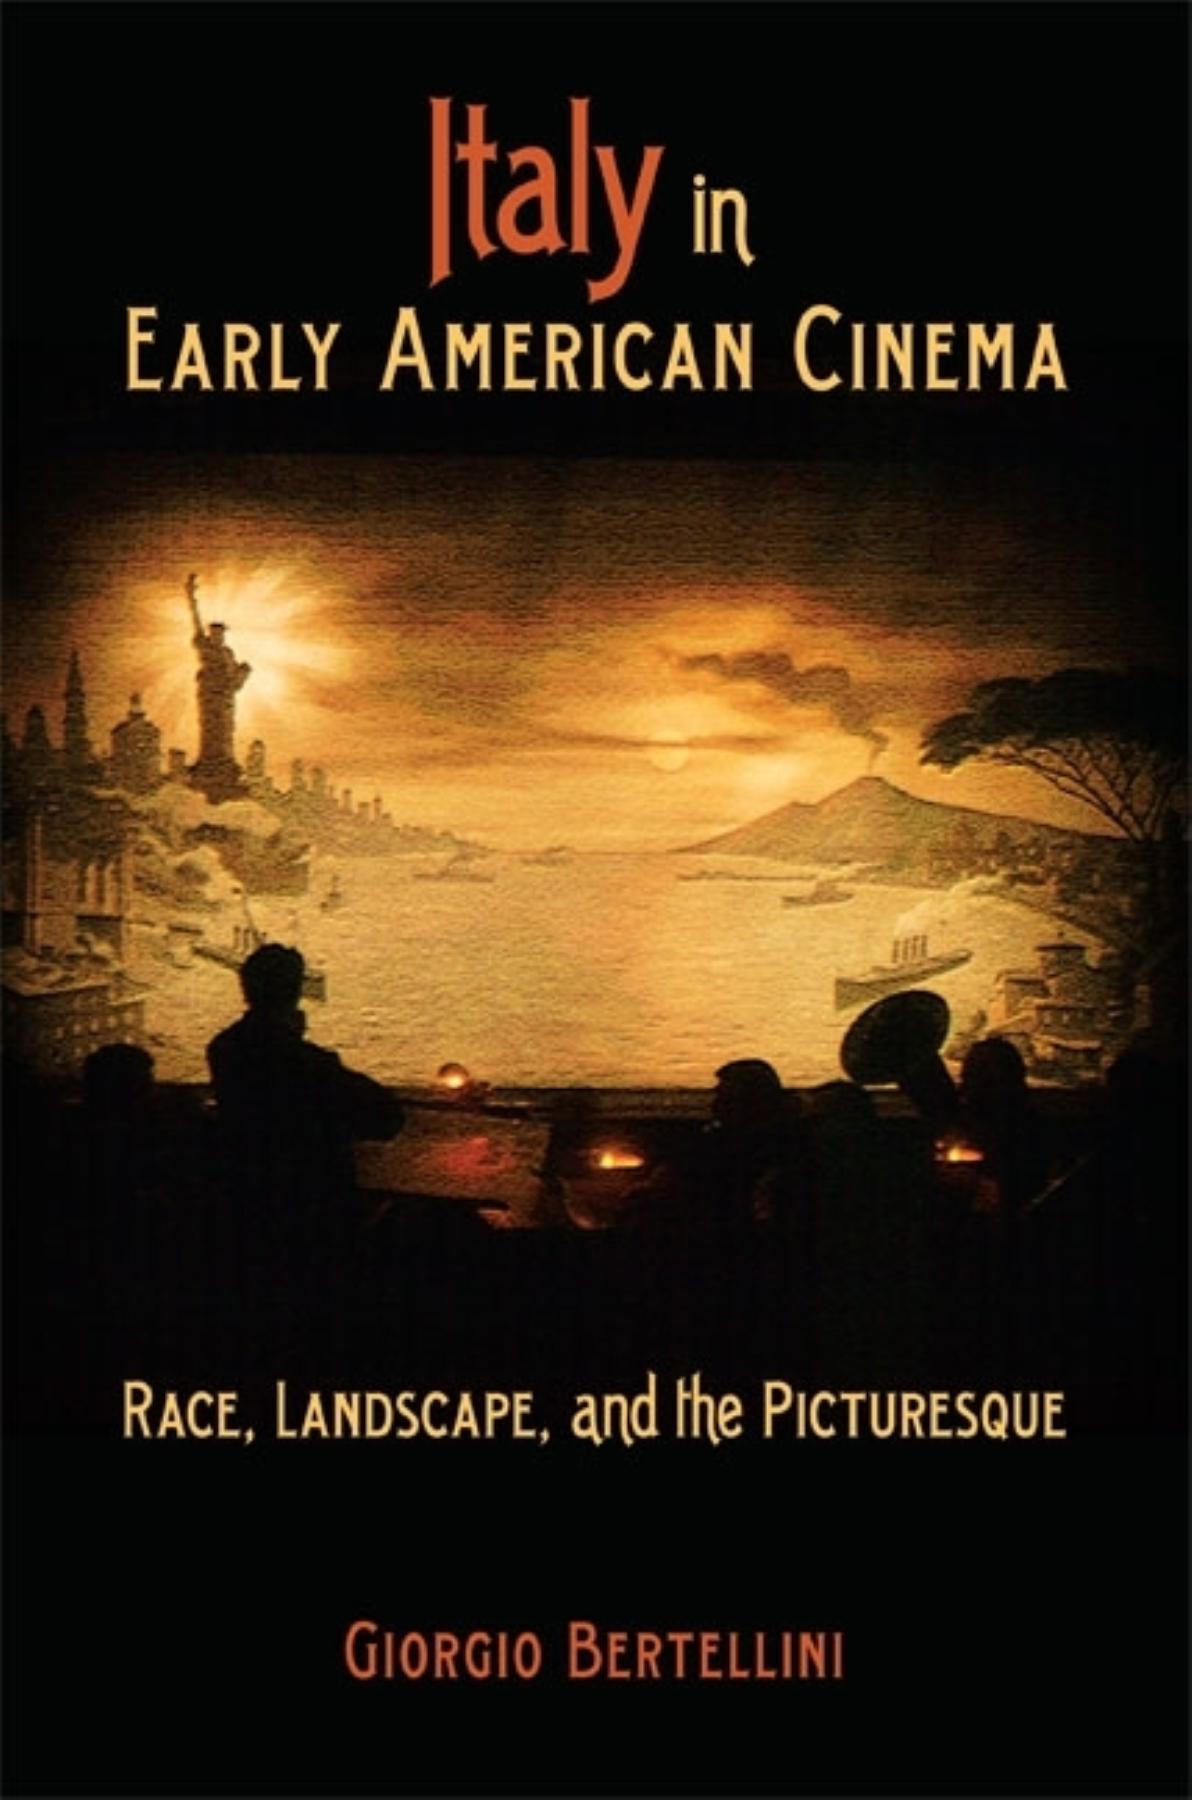 Italy in Early American Cinema - Bertellini, Giorgio